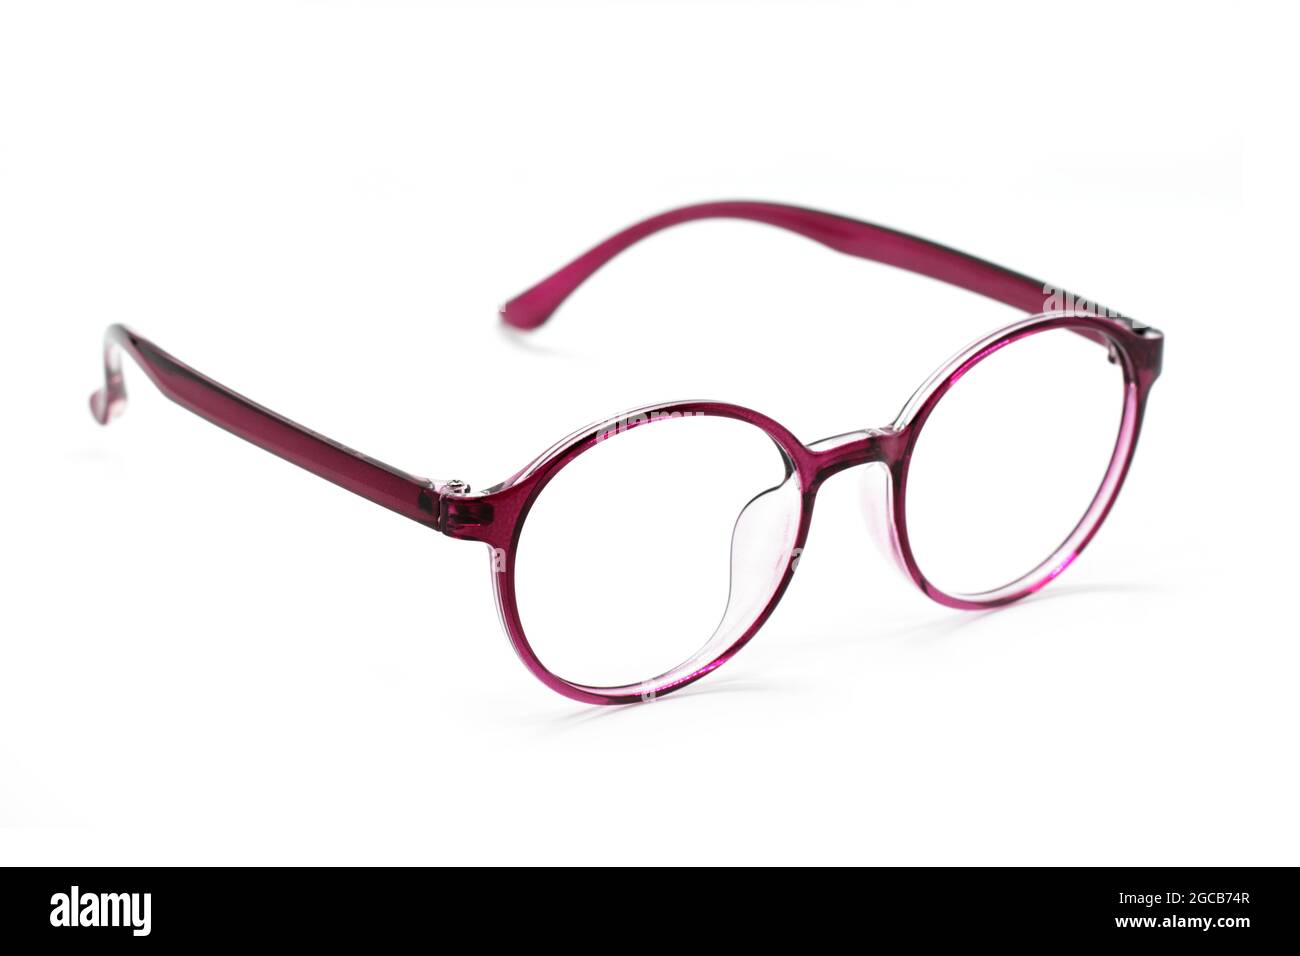 Image de lunettes modernes et tendance isolées sur fond blanc, lunettes, lunettes Banque D'Images